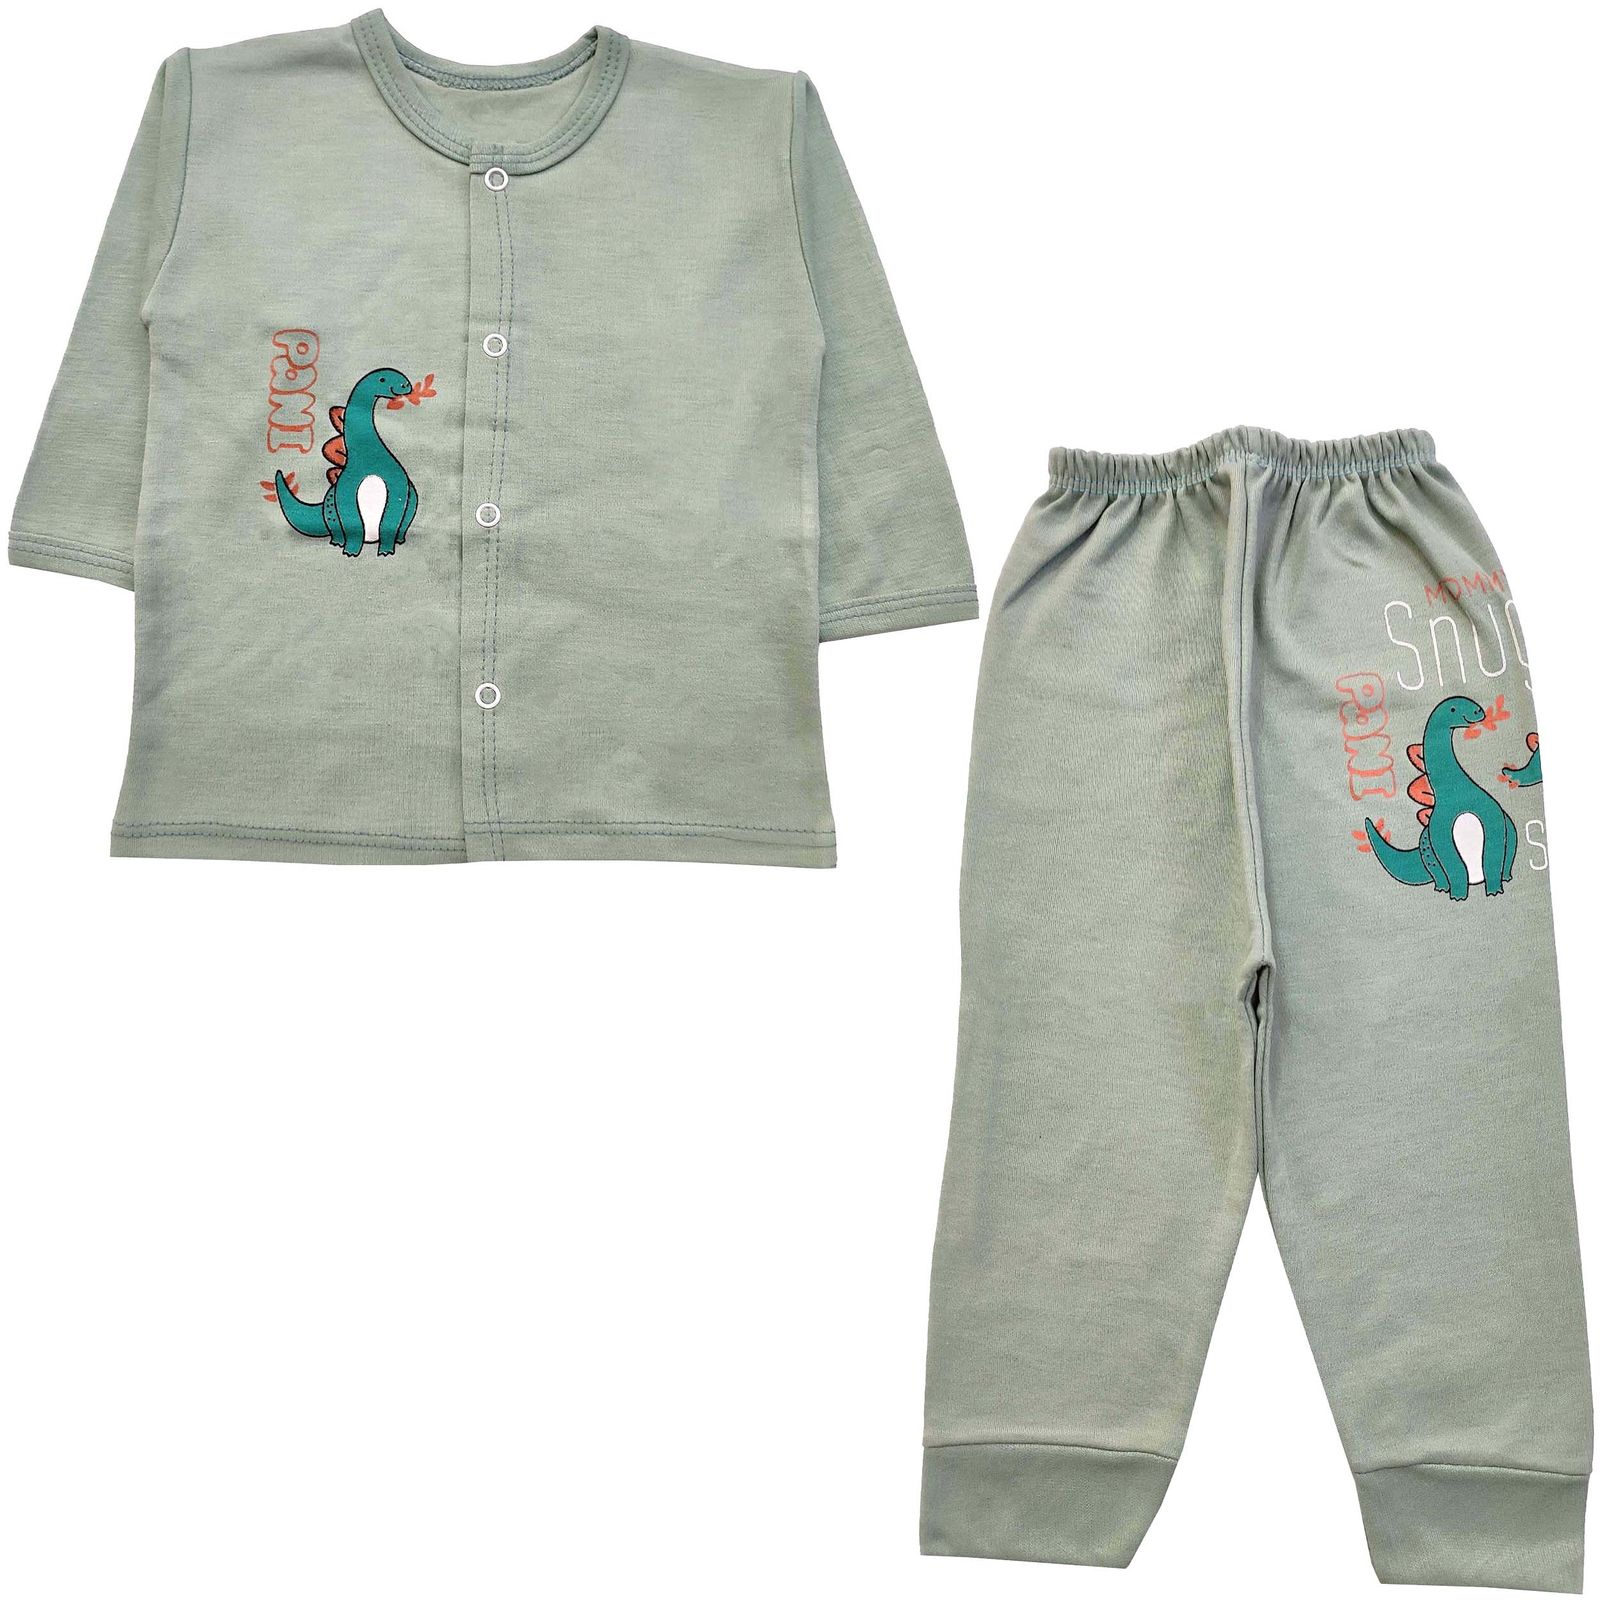 ست 3 تکه لباس نوزادی مدل دایناسور کد 3926 رنگ سبز -  - 3